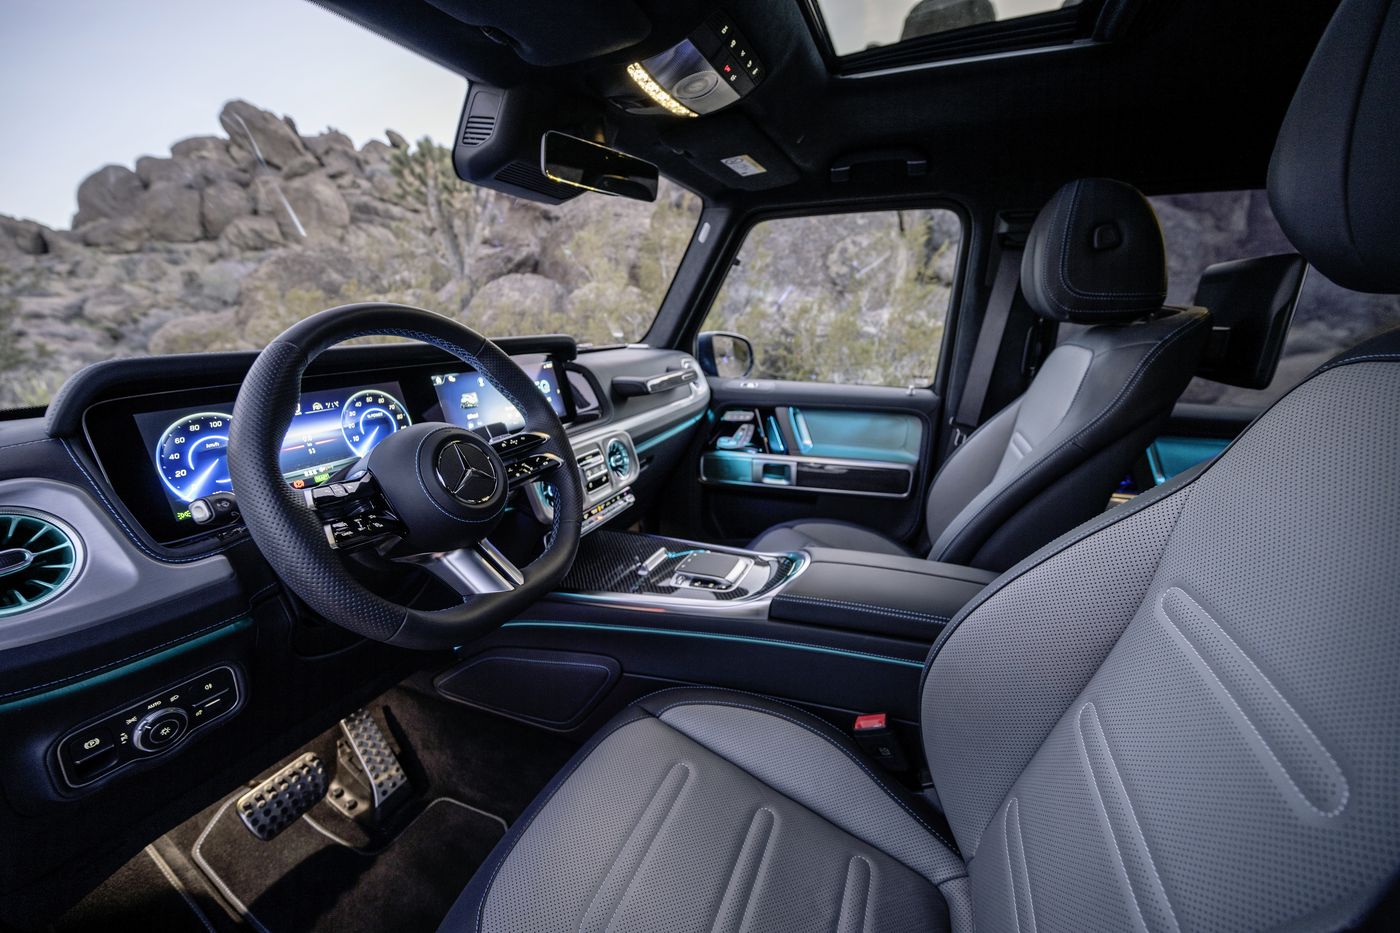 El rey de los todoterrenos, el Mercedes Clase G, se hace eléctrico 100% con cuatro motores, 587 caballos, batería de 116 kW y 473 kilómetros de autonomía